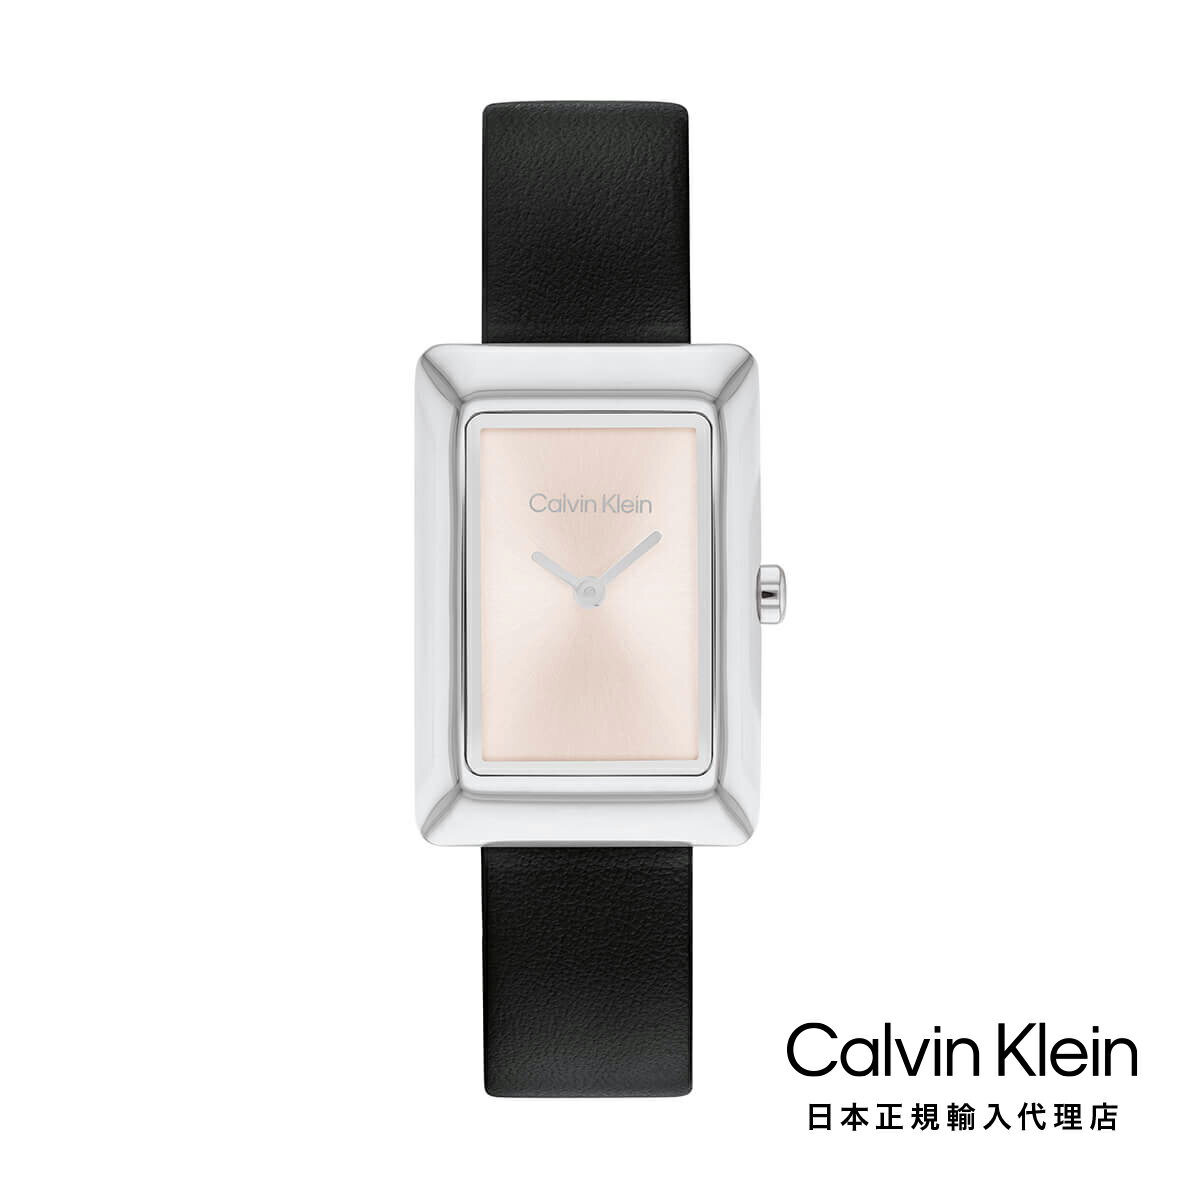 Calvin Klein カルバンクライン 日本総輸入代理 腕時計 レディース ブランド スタイルド 22.5MM ブラッ..